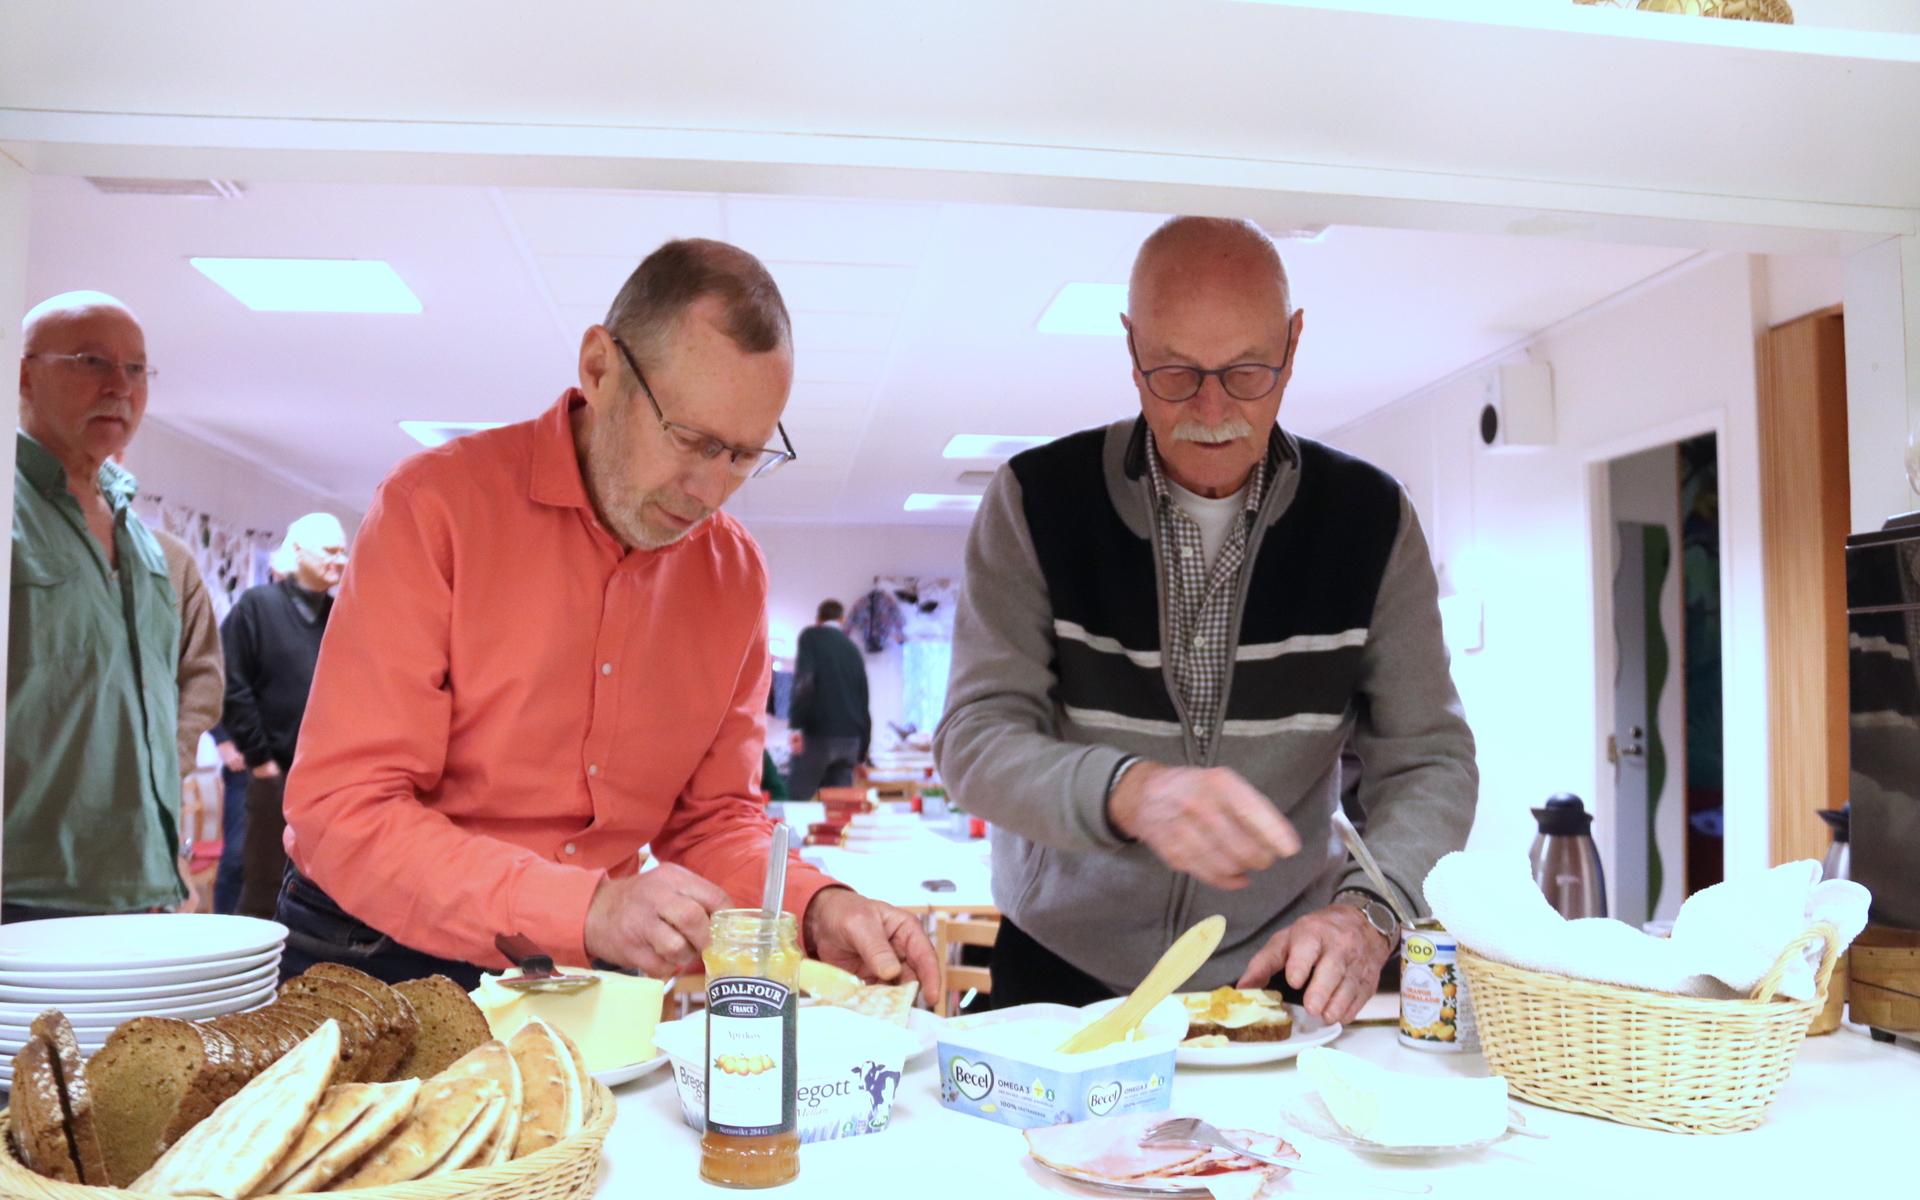 72-årige Hans Wiktorson från Sävedalen och Påvelundsbon Roland Lind, 83, tar för sig av frukostmaten. ”Jag tror inte den här sortens frukostar finns någon annanstans i Göteborgsområdet, åtminstone inte i den här formen. Vi kommer ganska djupt i våra tankar”, säger Hans. 